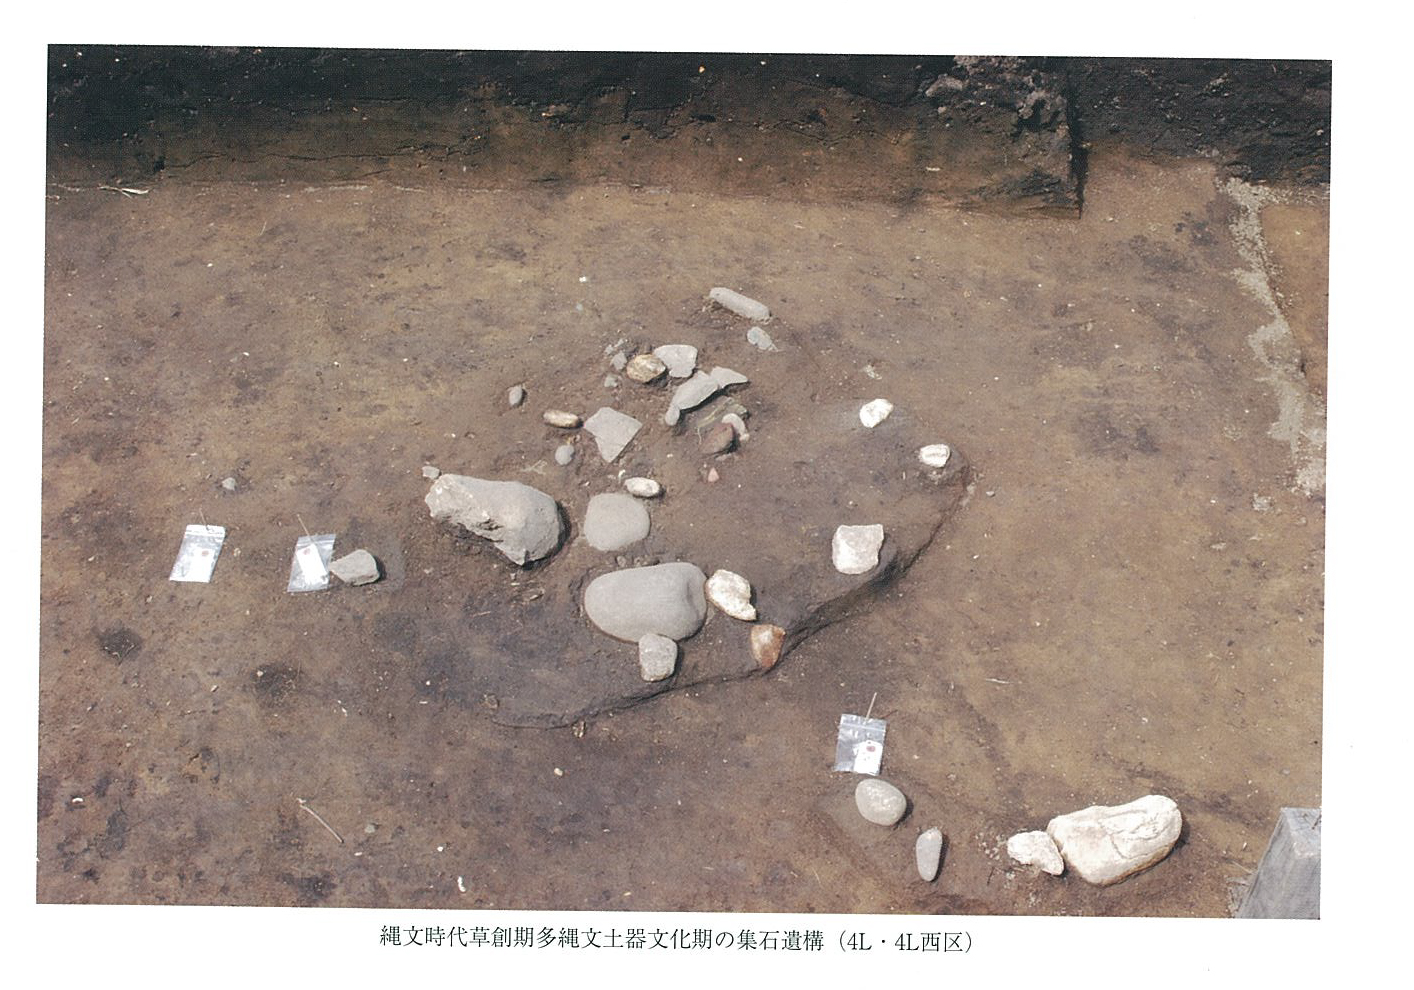 縄文草創期の石器がまとまって出土